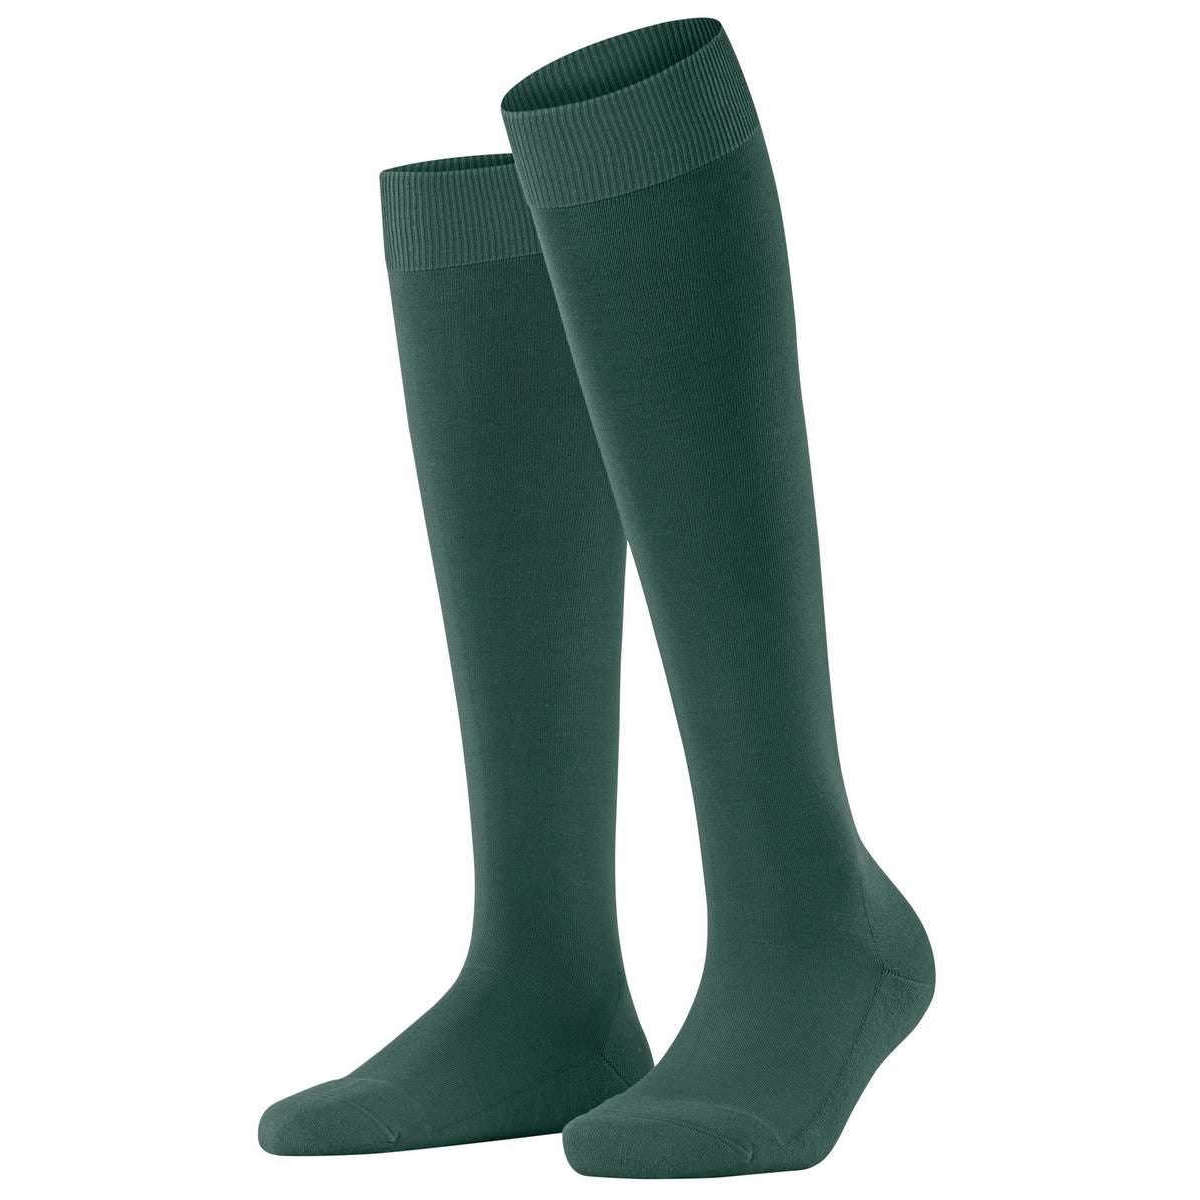 Falke Climawool Knee High Socks - Hunter Green - Small - 4-5 UK | 6.5-7.5 US | 37-38 EUR